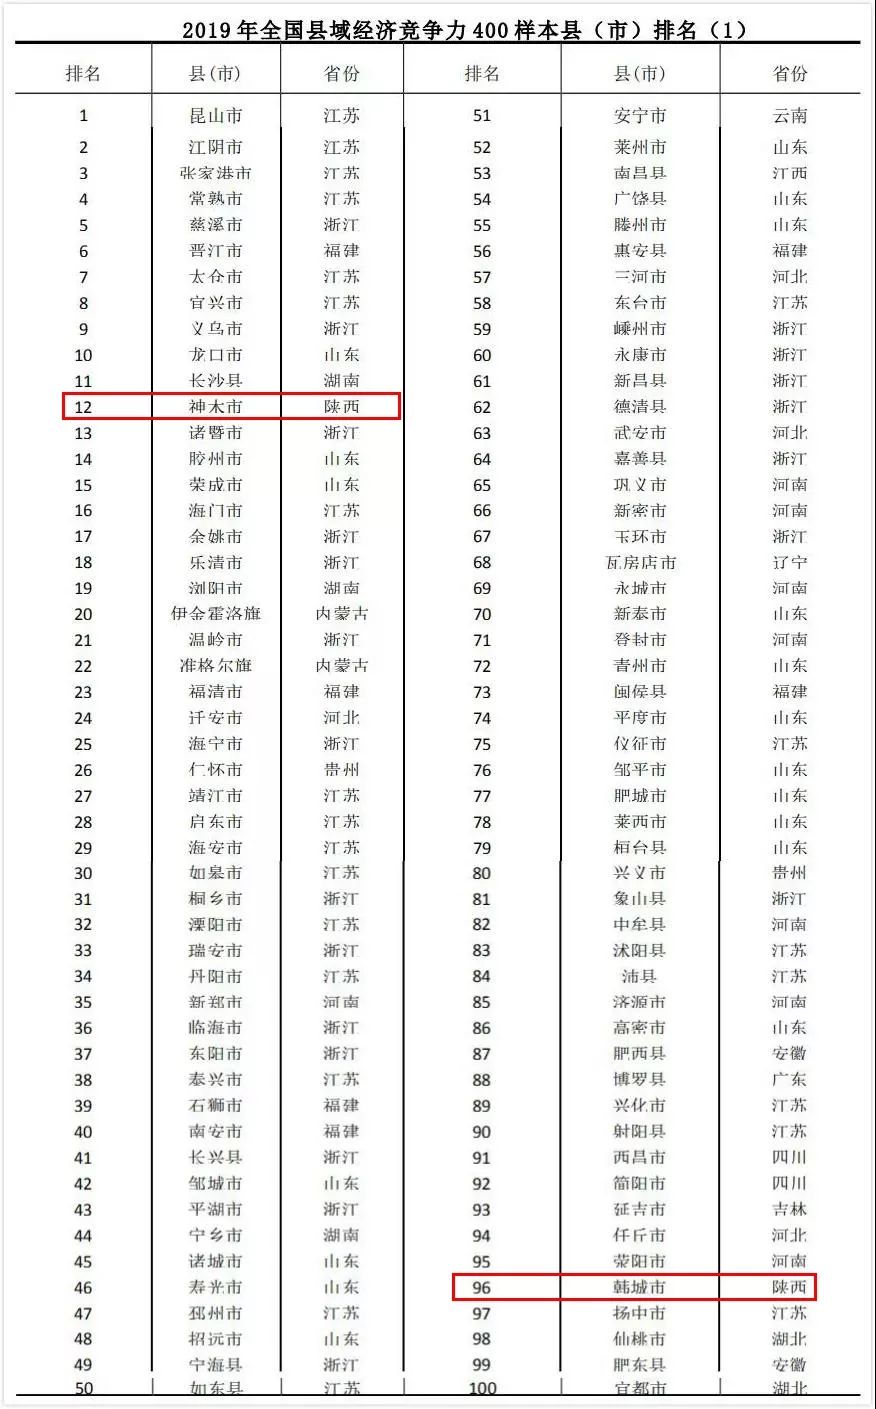 2018年世界百强联赛排行榜碉_全球城市竞争力榜单来了 来了 来了 扬州排